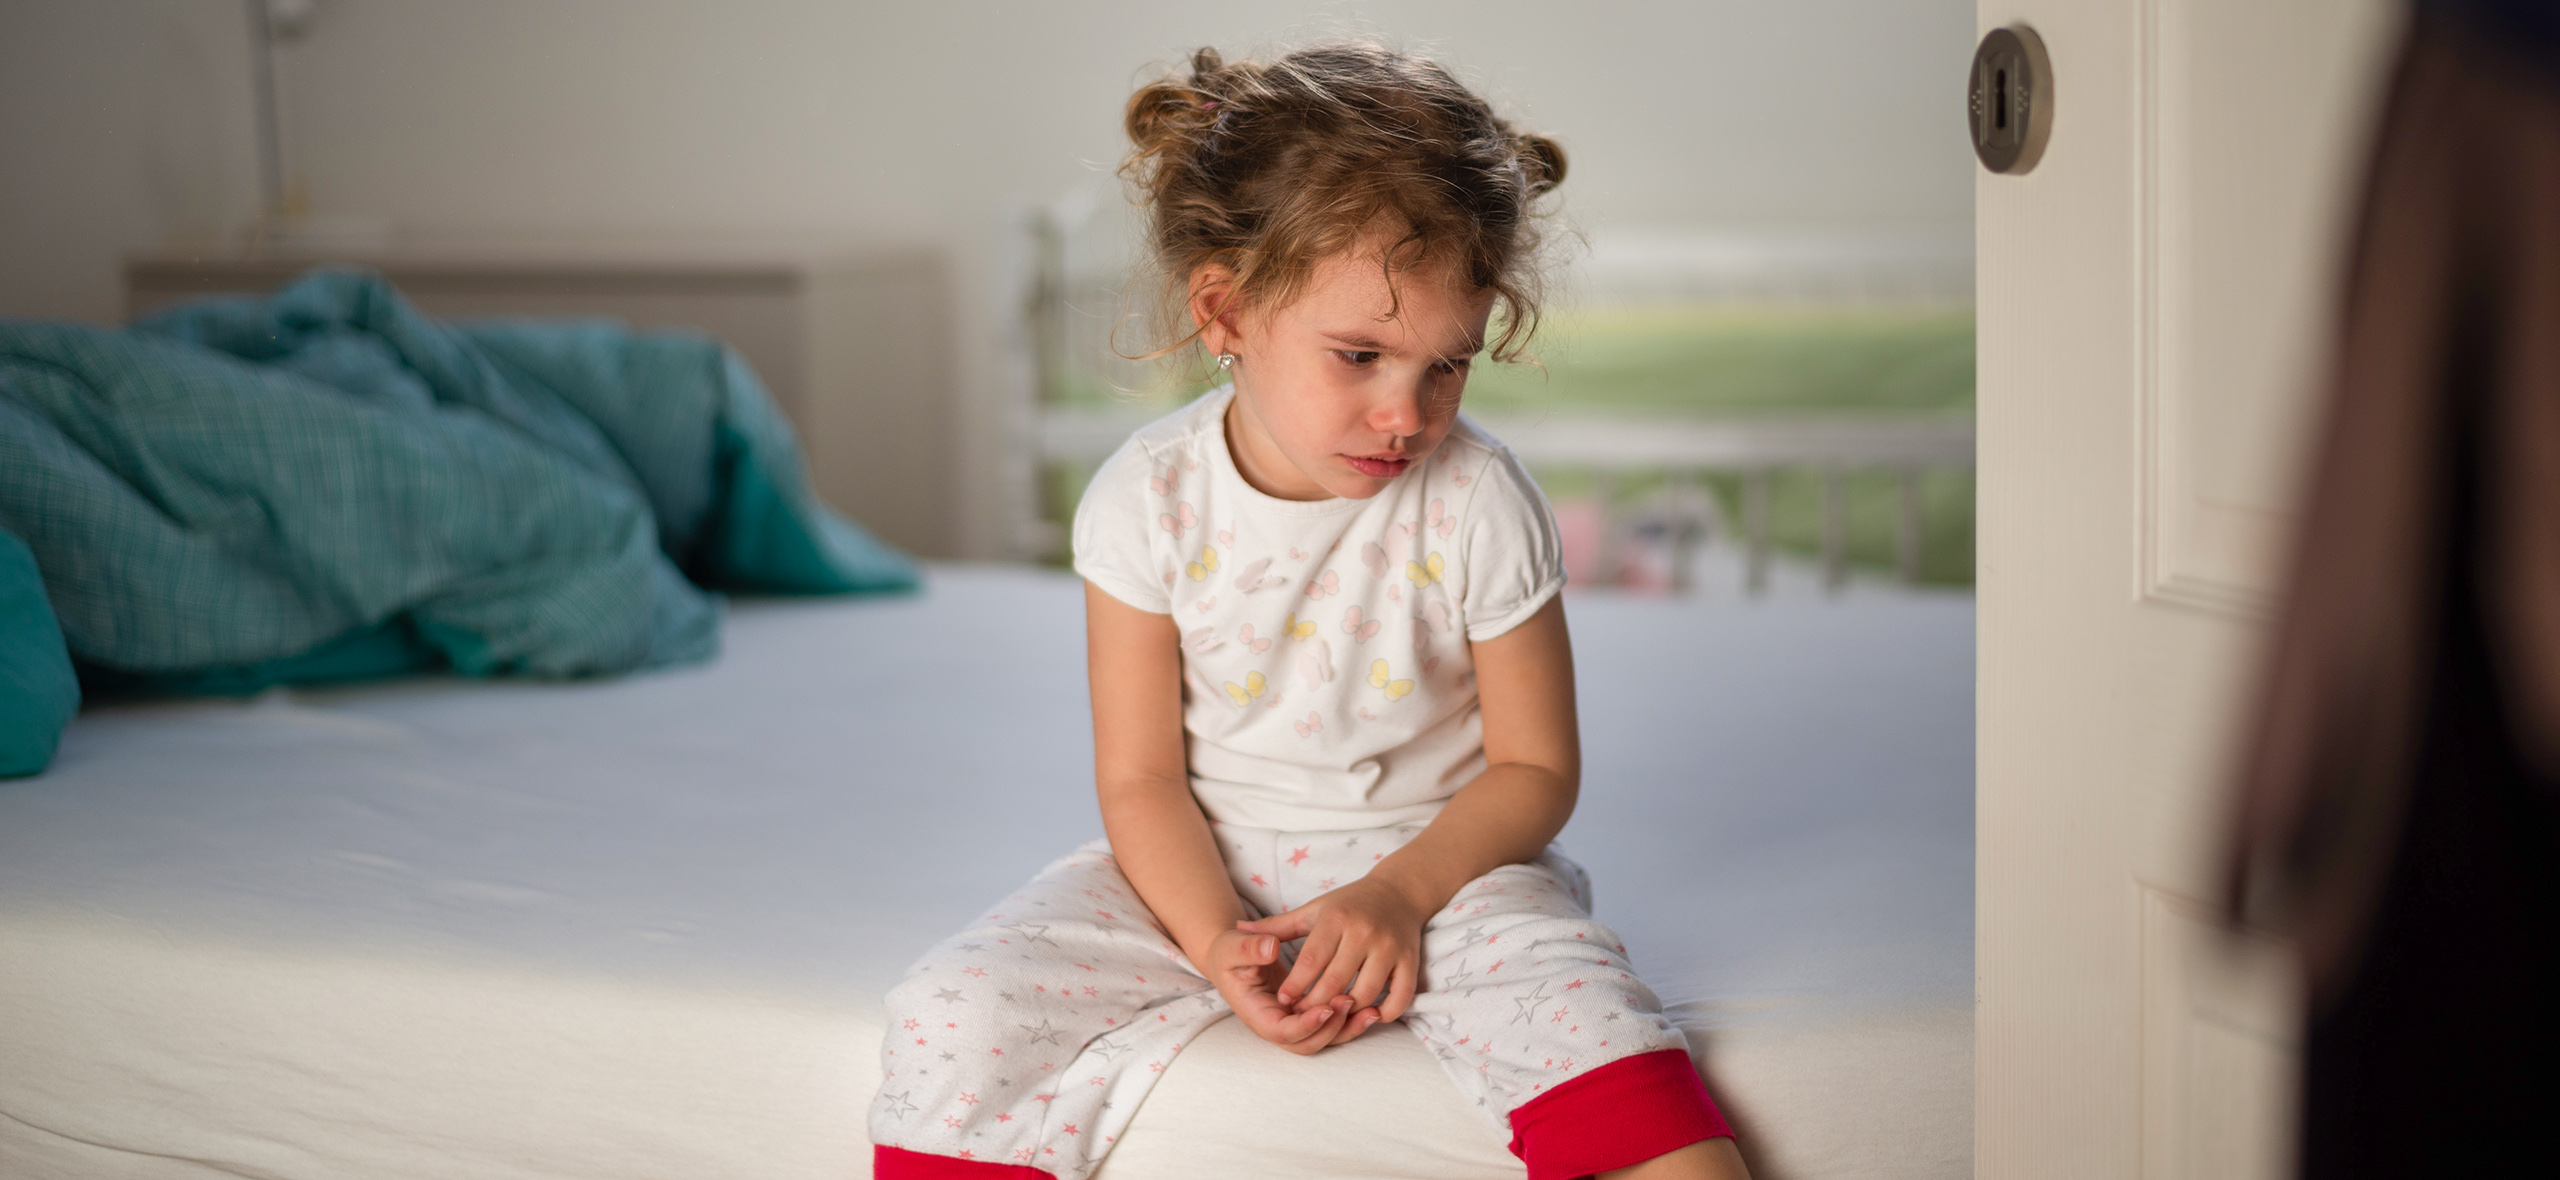 Как стоит и не стоит наказывать детей: 5 выводов ученых и психологов